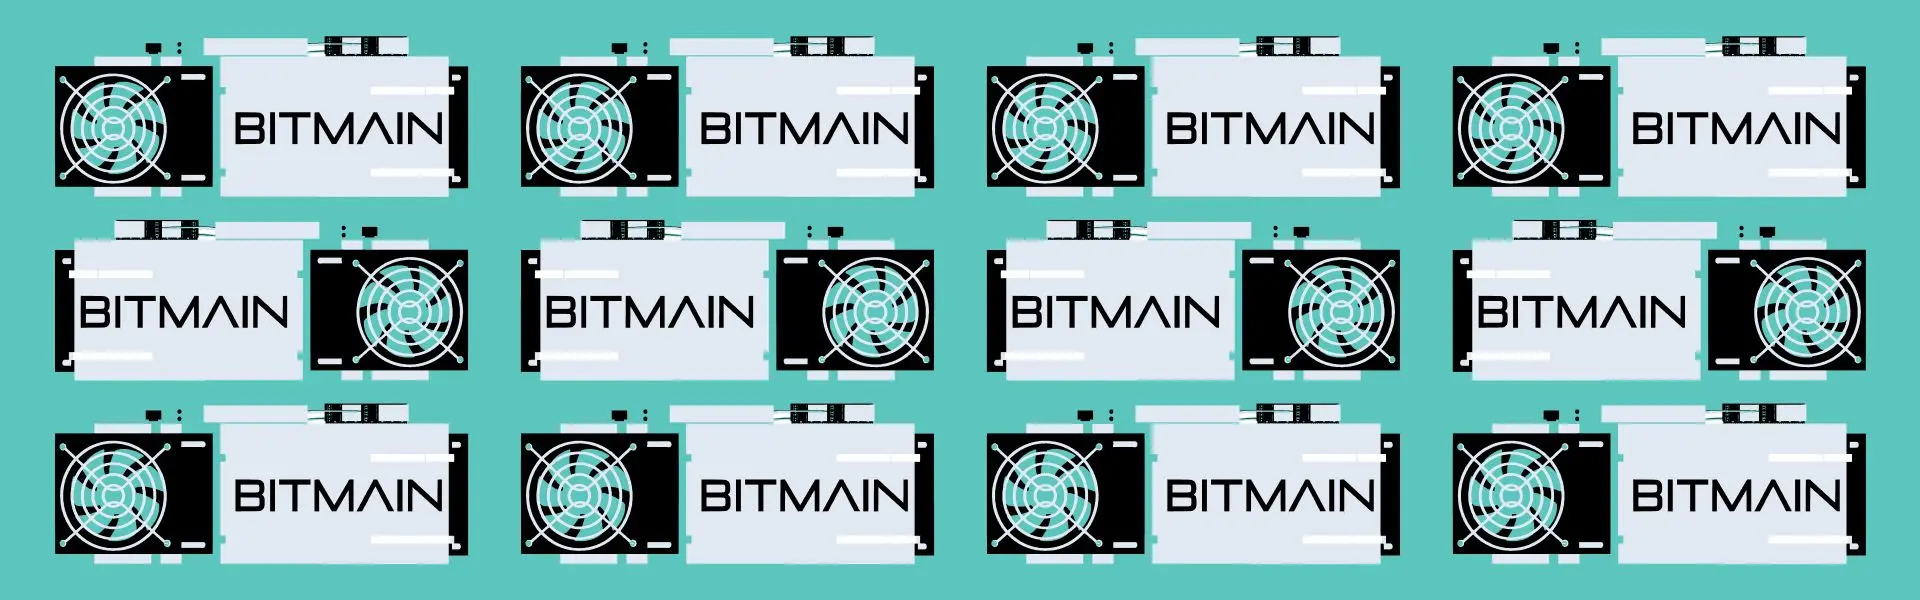 Компанія Bitfarms придбала від Bitmain 52 000 апаратів для майнінгу криптовалют.